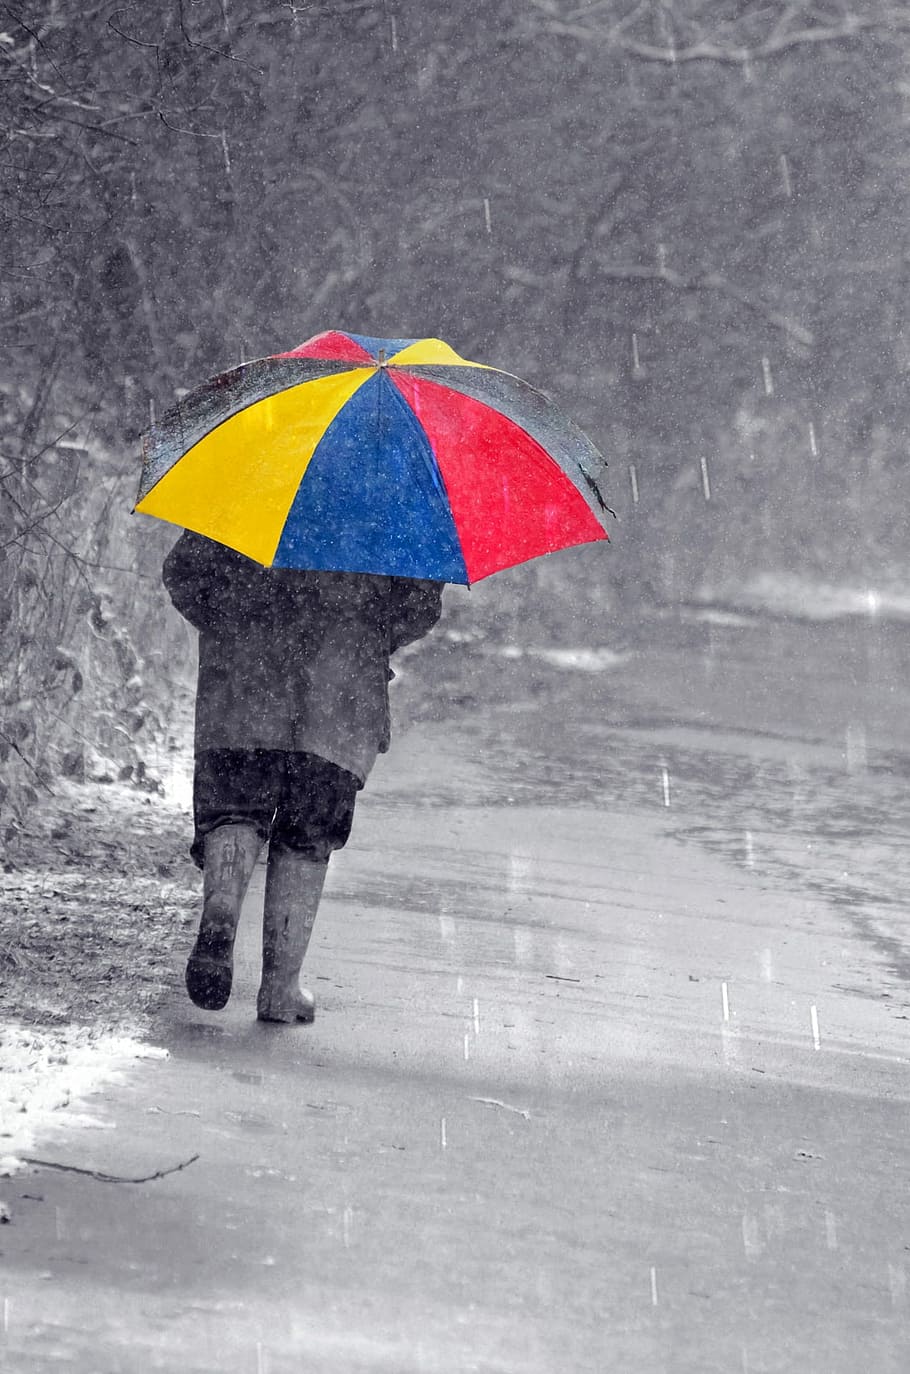 seletiva, fotografia colorida, pessoa, segurando, guarda-chuva, mulher, azul, amarelo, guarda-chuva vermelho, caminhada